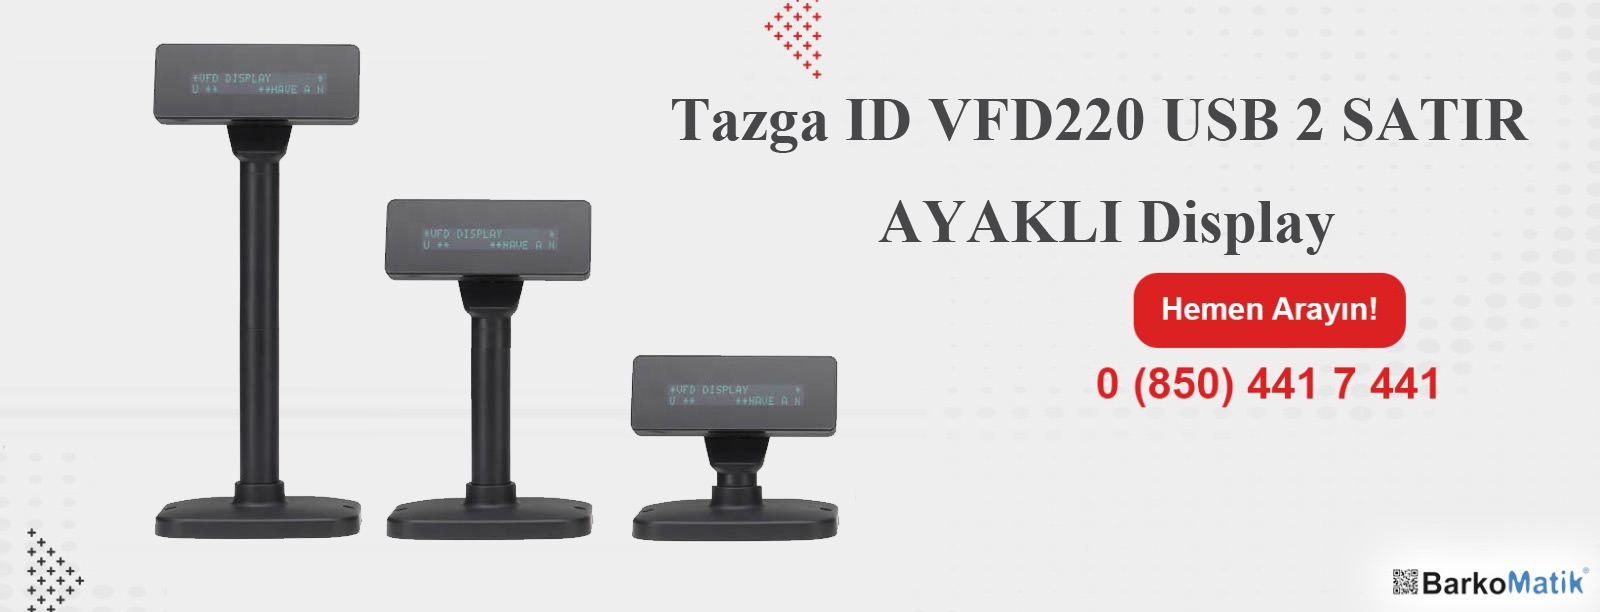 MNT-TAZGA ID VFD220 USB 2 SATIR MÜŞTERİ GÖSTERGESİ AYAKLI (2.EKRAN)